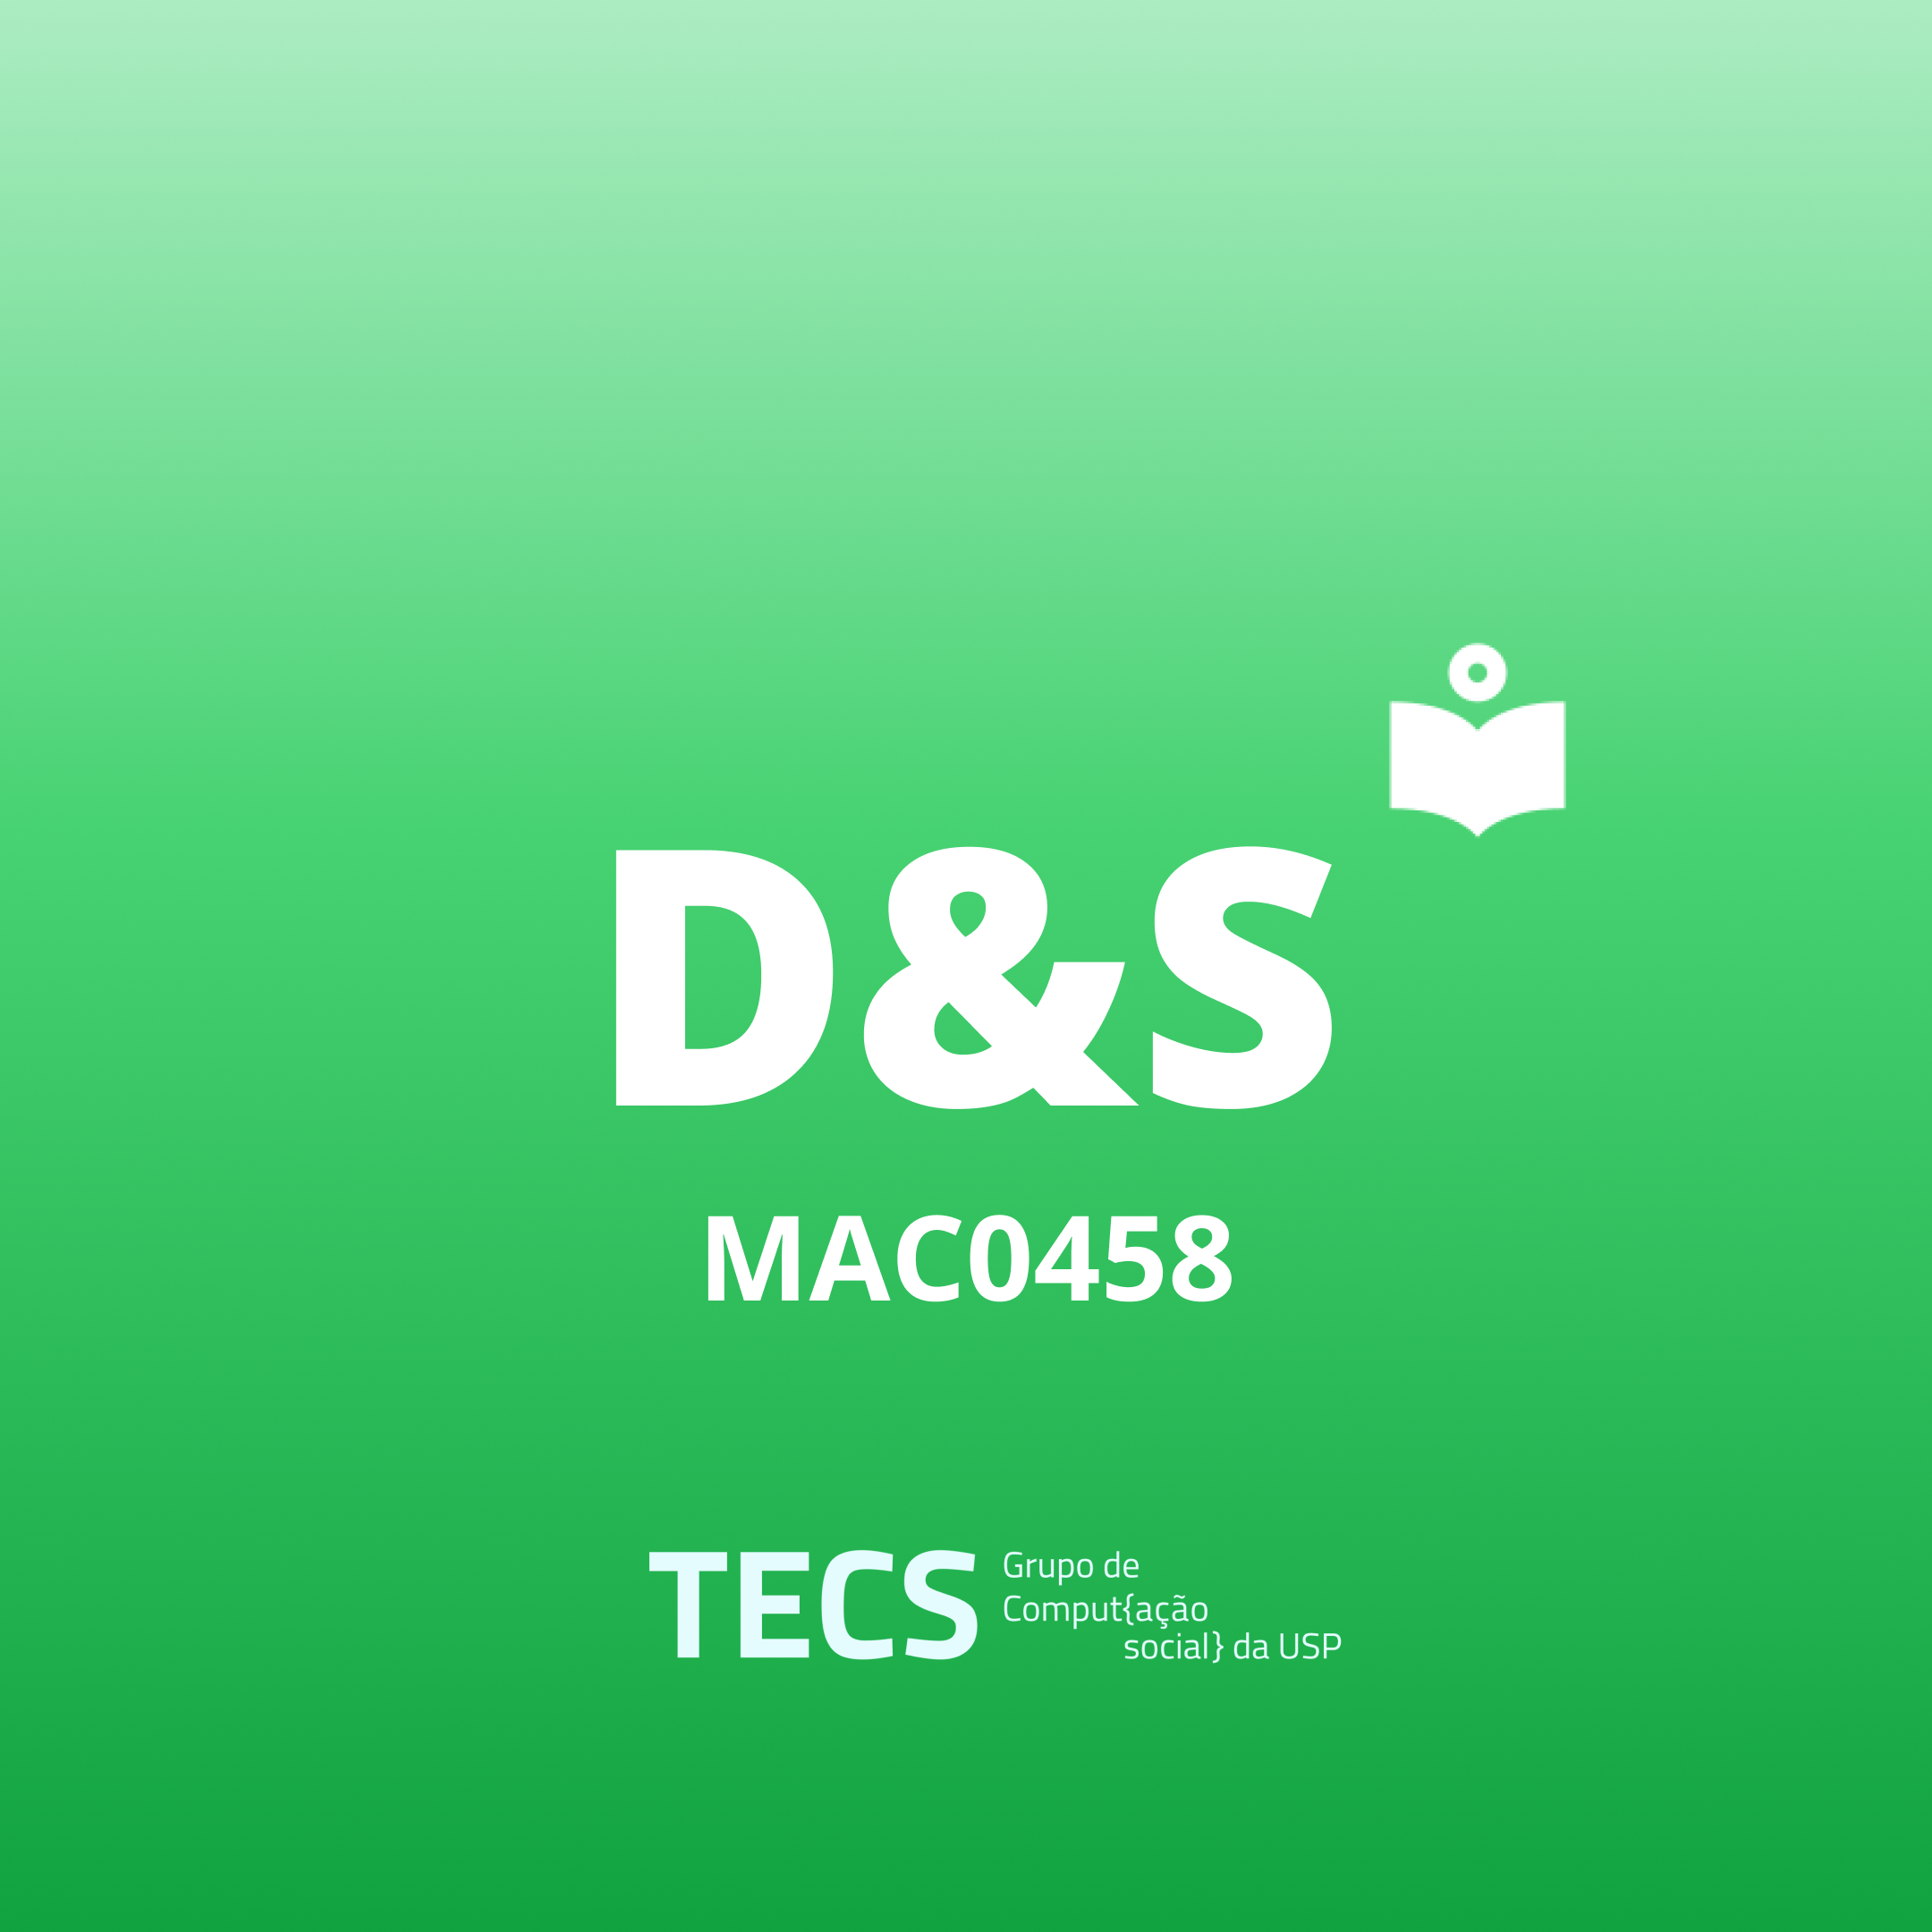 Ícone com 'D & S — MAC0458' escrito sobre um fundo claro.